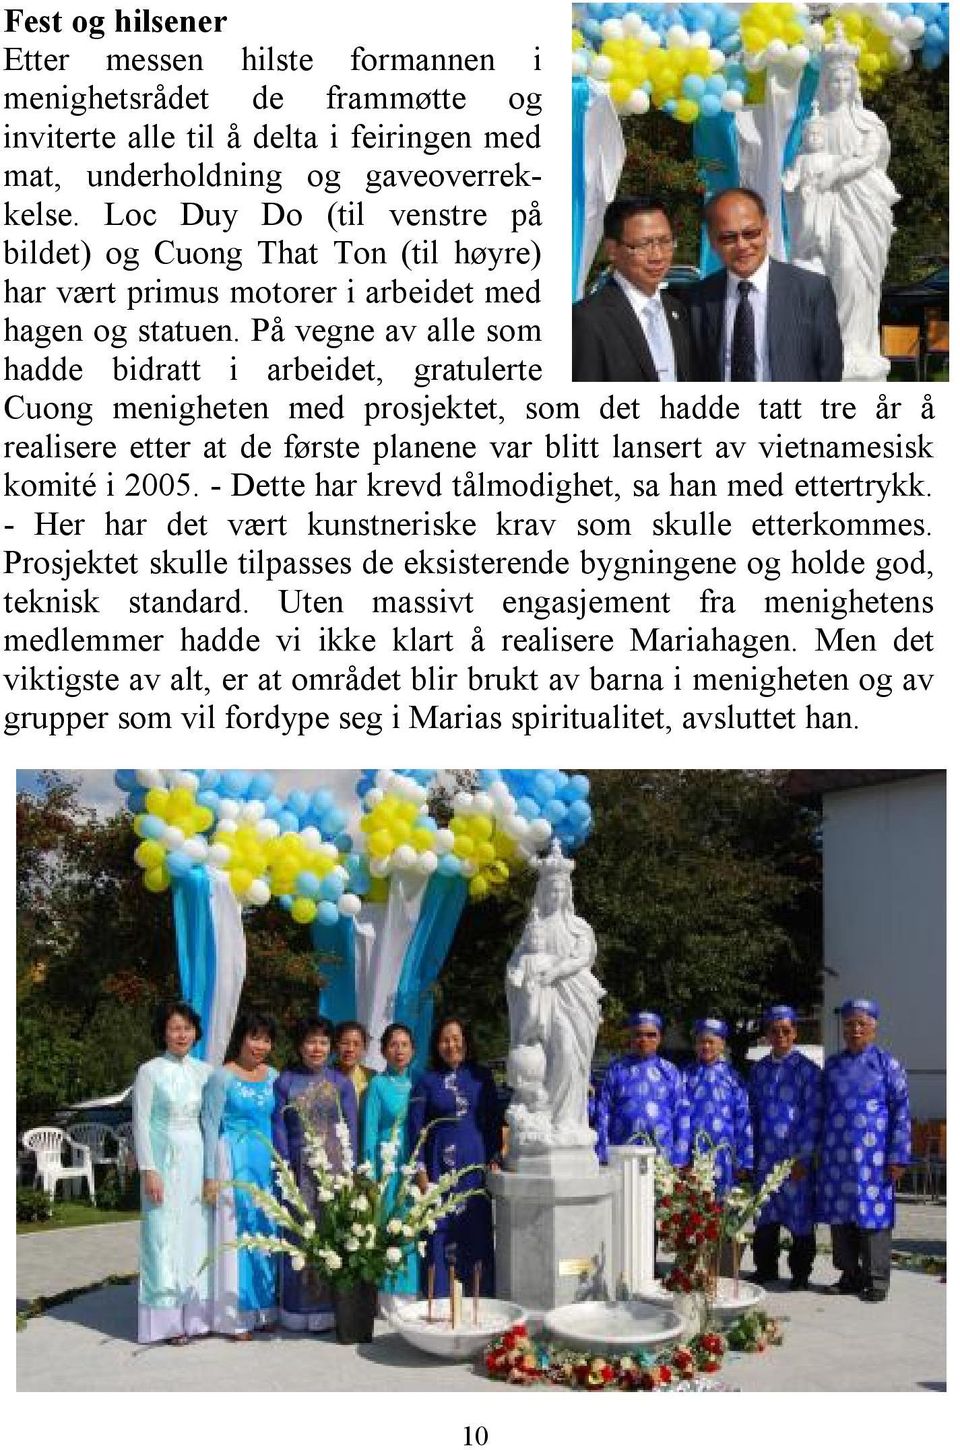 På vegne av alle som hadde bidratt i arbeidet, gratulerte Cuong menigheten med prosjektet, som det hadde tatt tre år å realisere etter at de første planene var blitt lansert av vietnamesisk komité i